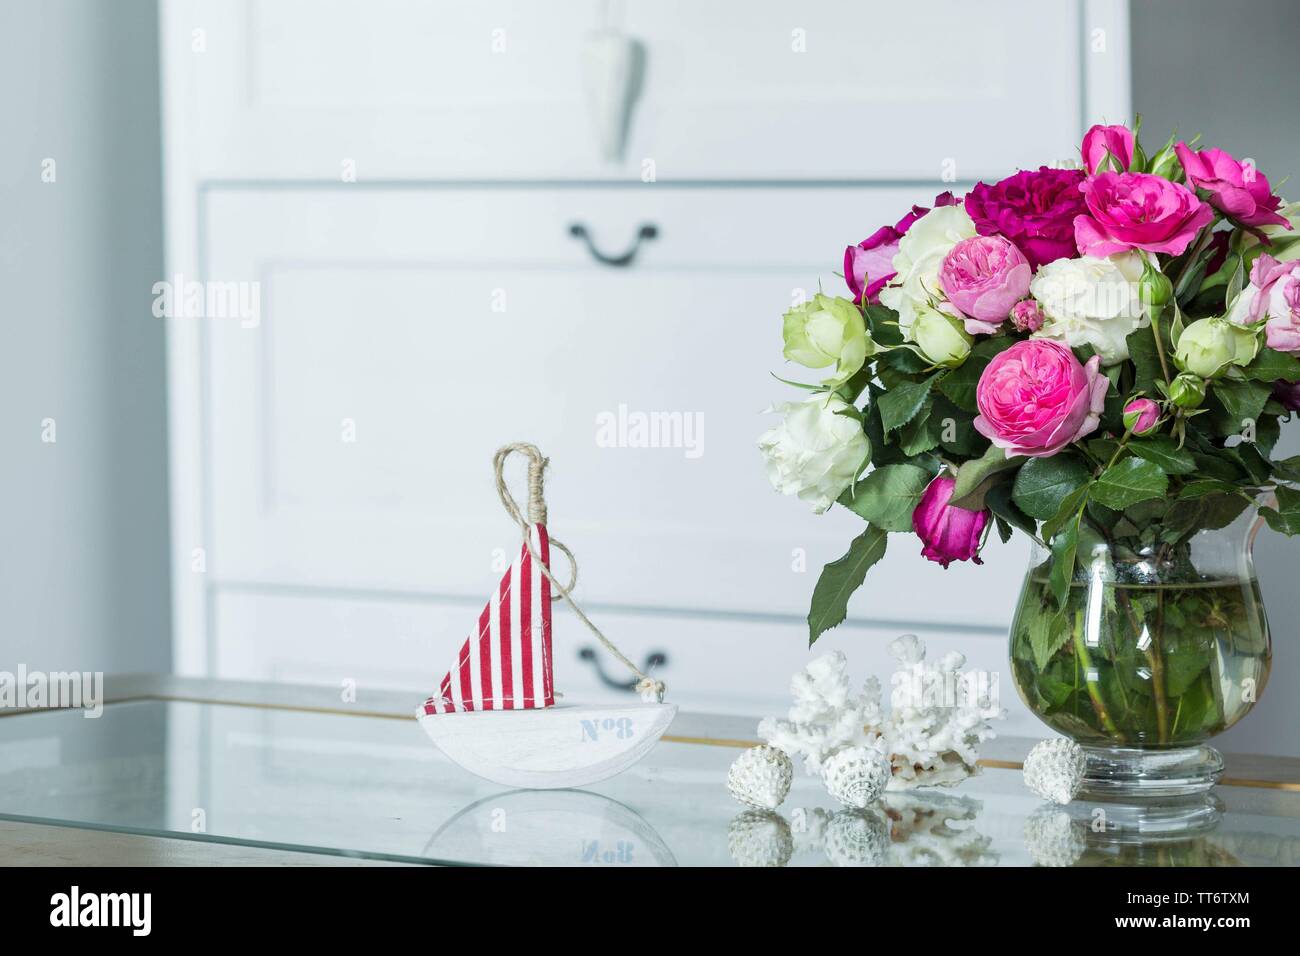 Innenbereich im Hampton Style - frische Blumen, Muscheln, Segelboot Dekorationen Stockfoto